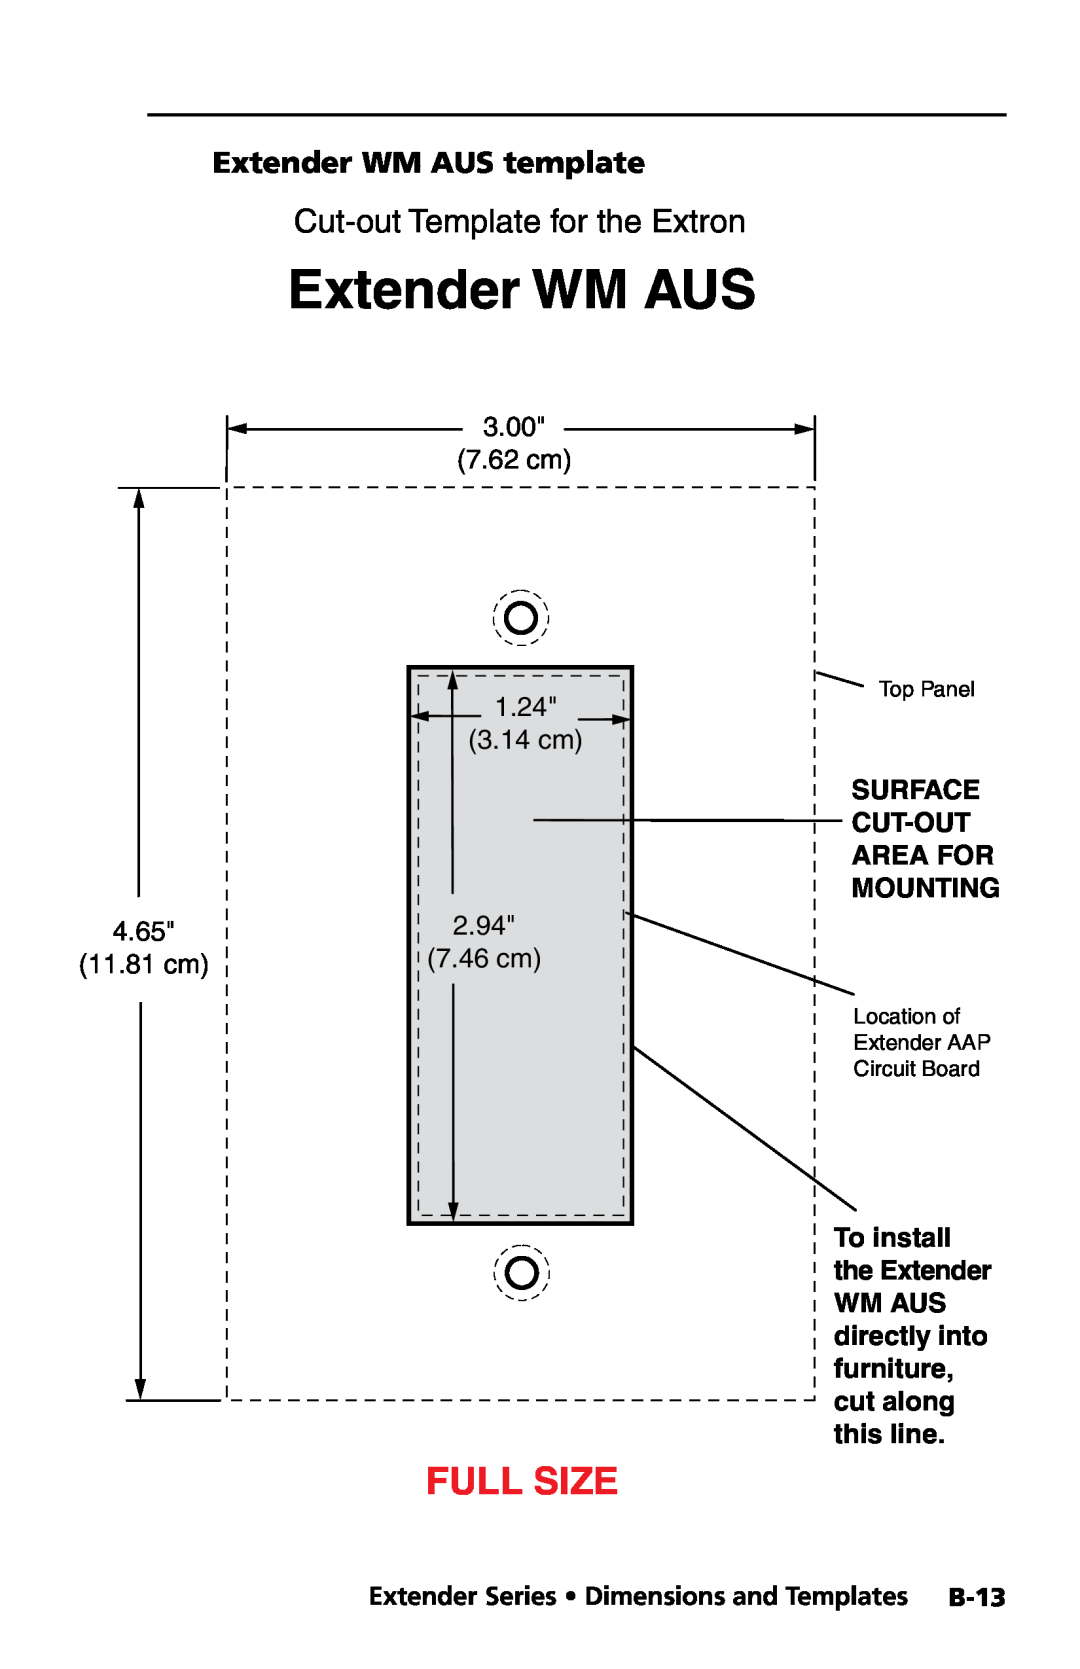 Extron electronic Extender Series manual Extender WM AUS template, 3.00 7.62 cm 1.24 3.14 cm, 4.65, 2.94, 11.81 cm, 7.46 cm 